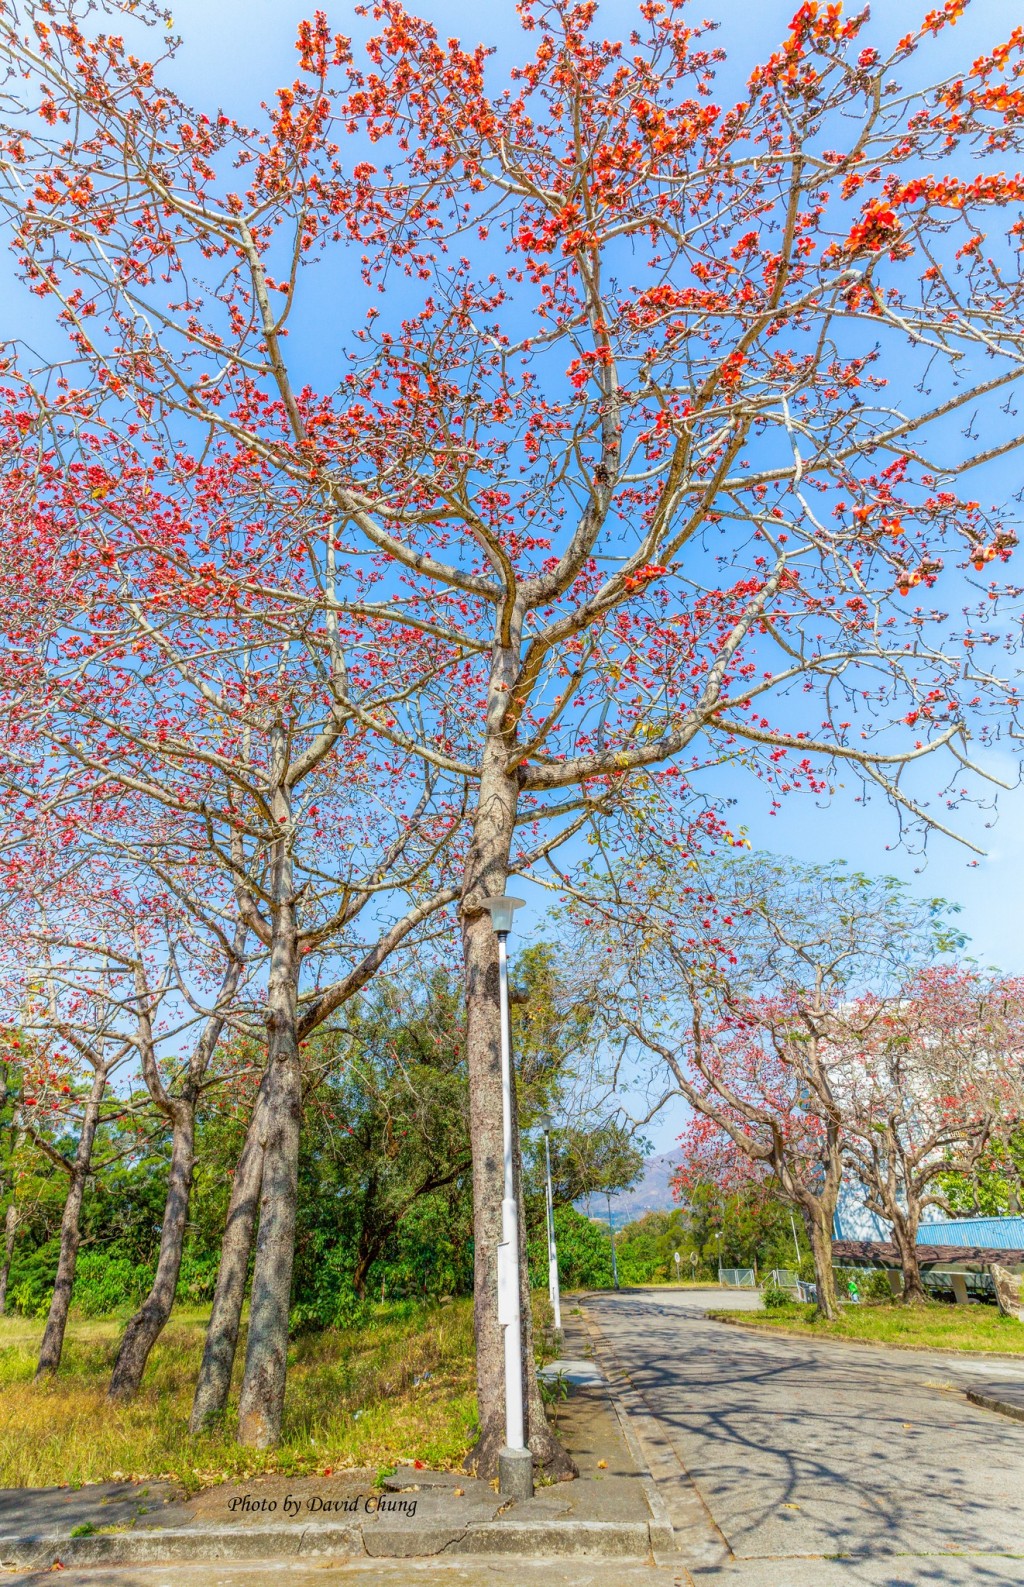 木棉又名红棉树、英雄树。图片授权David Chung